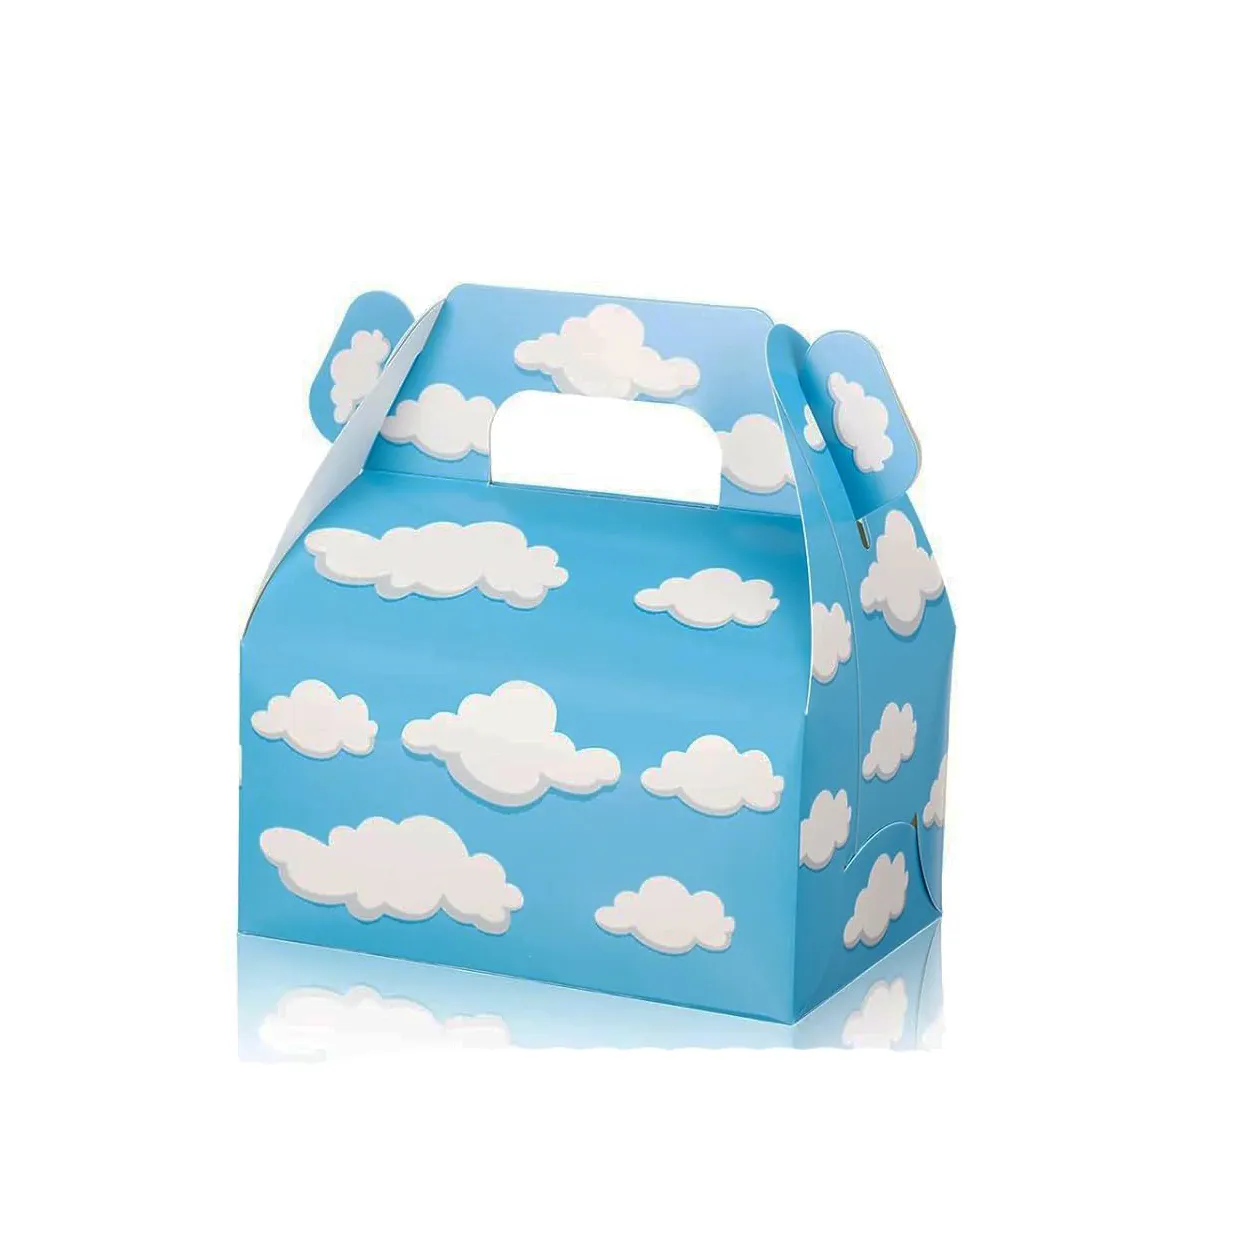 All'ingrosso per bambini forniture per feste di compleanno in cartone per confezioni di caramelle blu bianco con motivo a forma di nuvola portatile per bambini set di scatole regalo